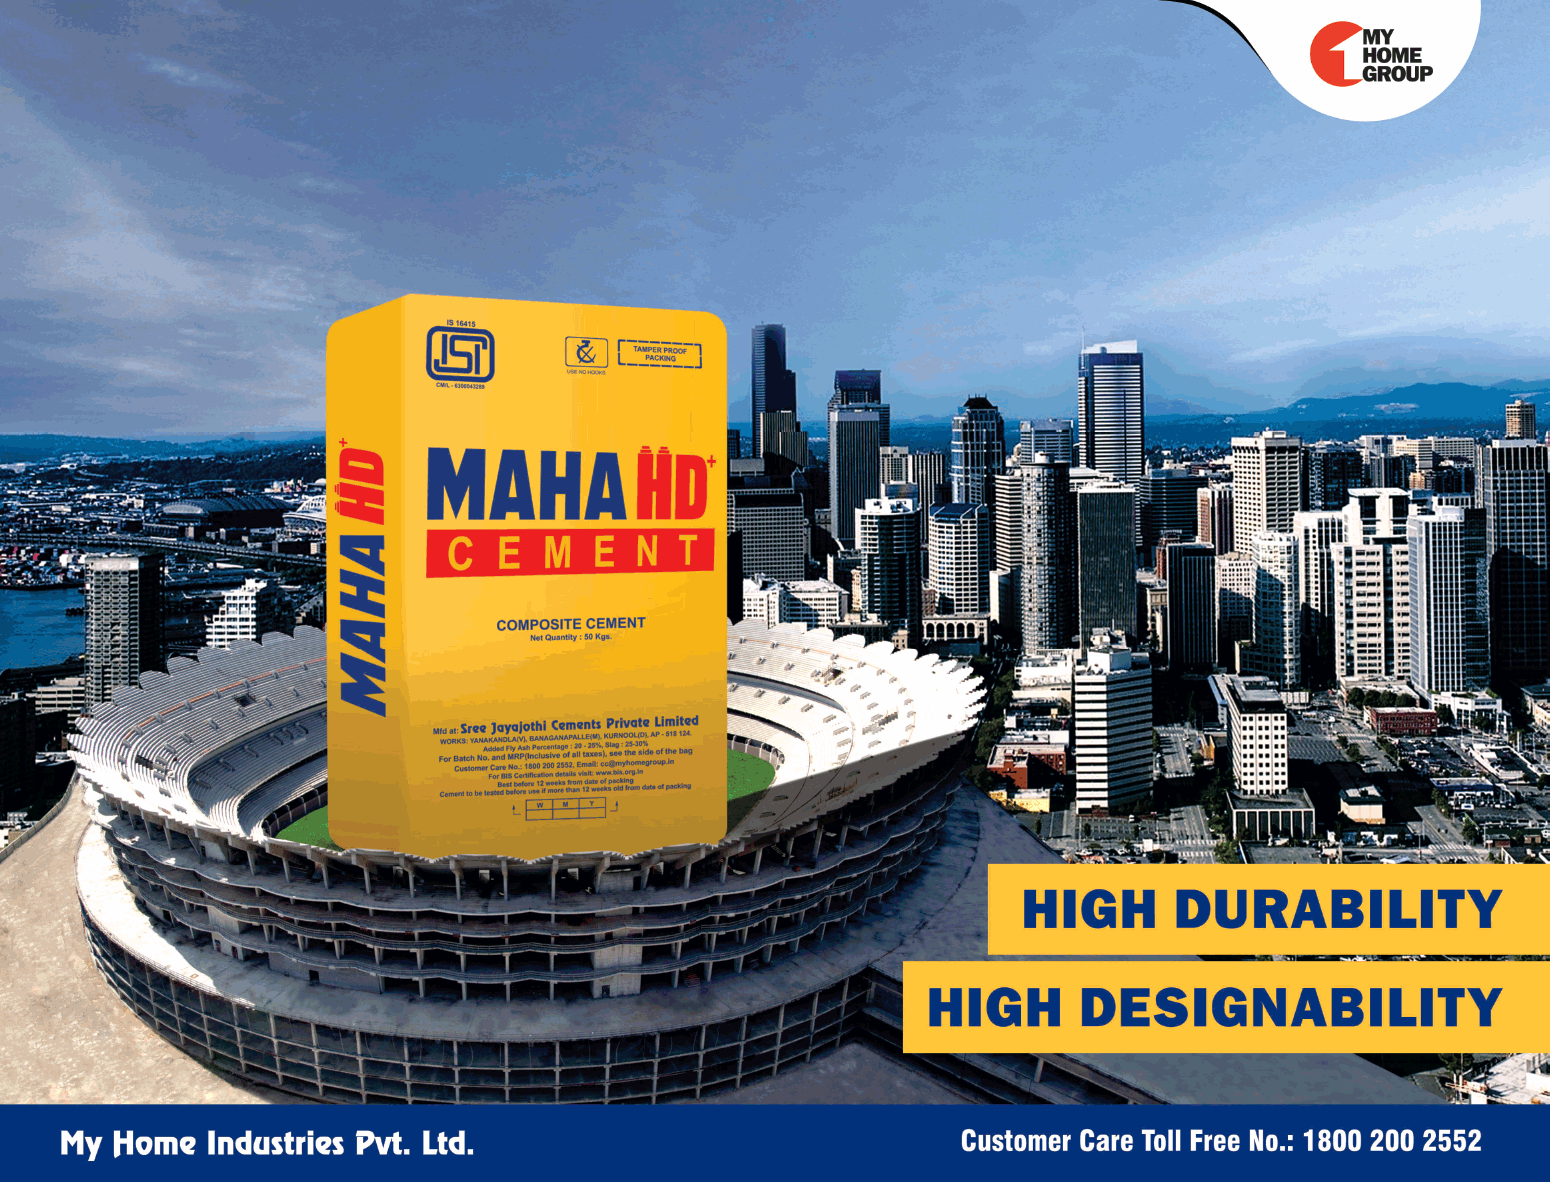 maha-hd-cement-high-durability-high-designability-ad-times-of-india-chennai-15-06-2019.png